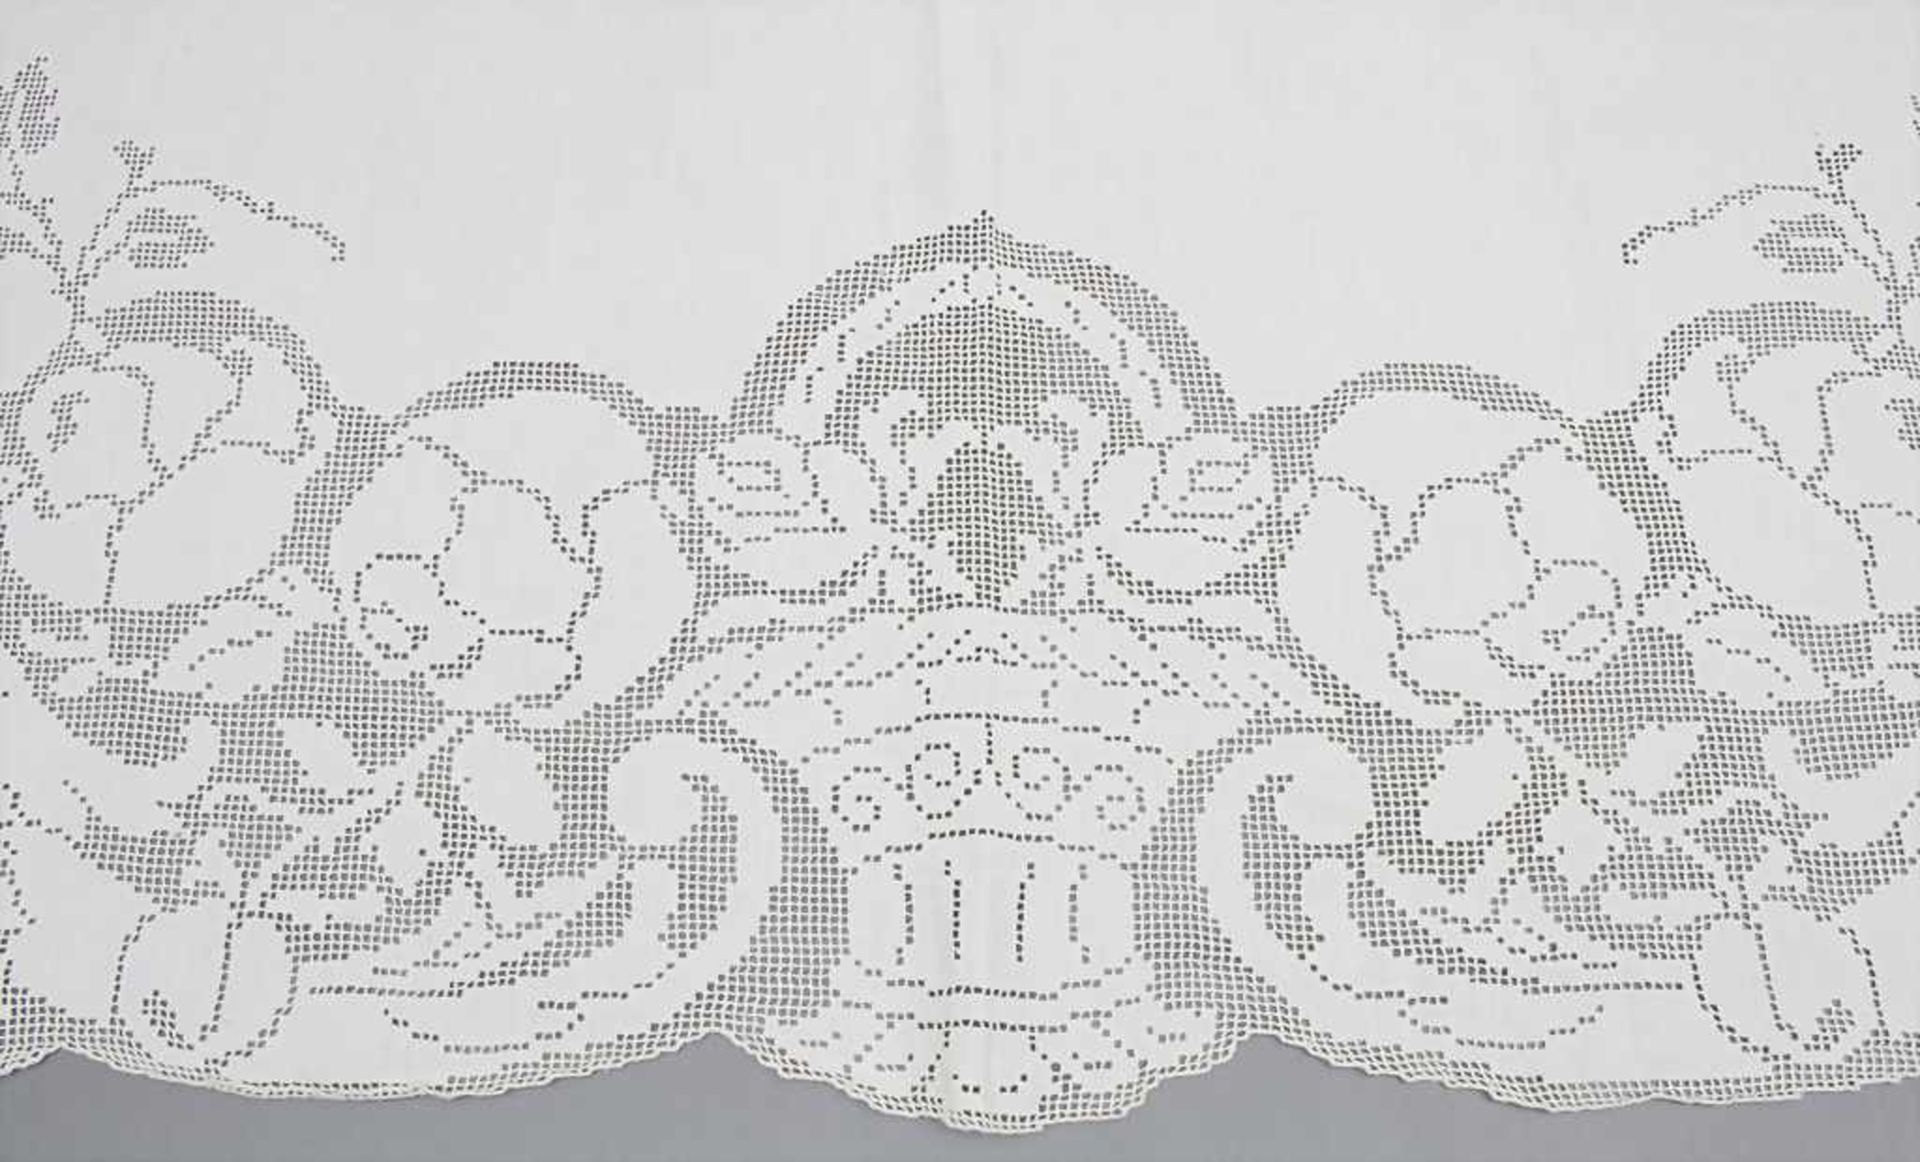 Spitzen-Tischdecke / A lace tableclothMaterial: Baumwolle, Maße: 280 x 170 cm, Zustand: gut - Bild 3 aus 3